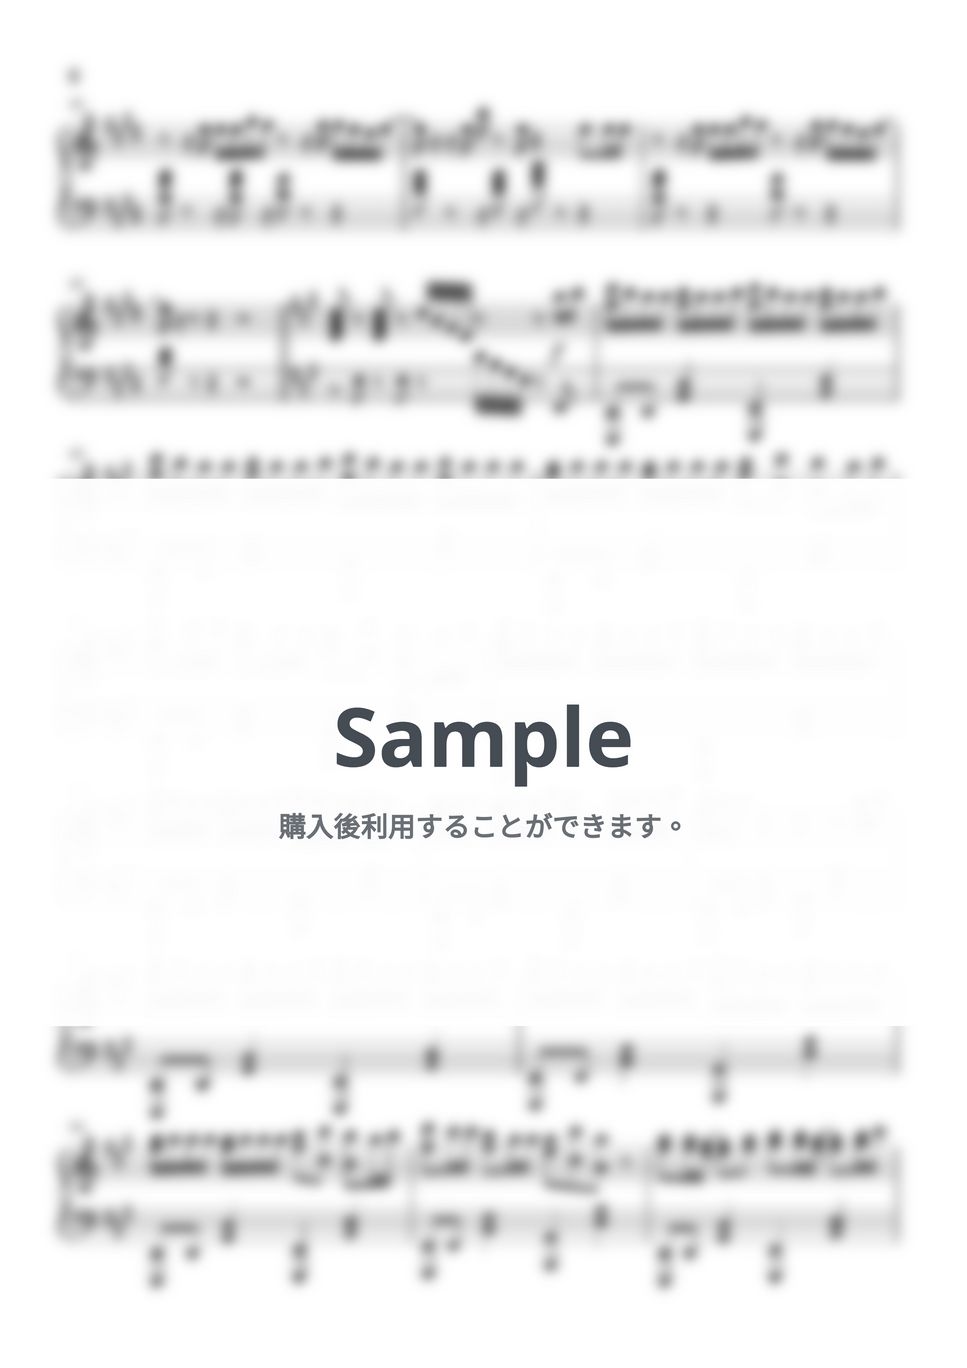 ピノキオピー - 嘘ミーム (ピアノソロ/ピノキオピー/初音ミク) by xxTazxx